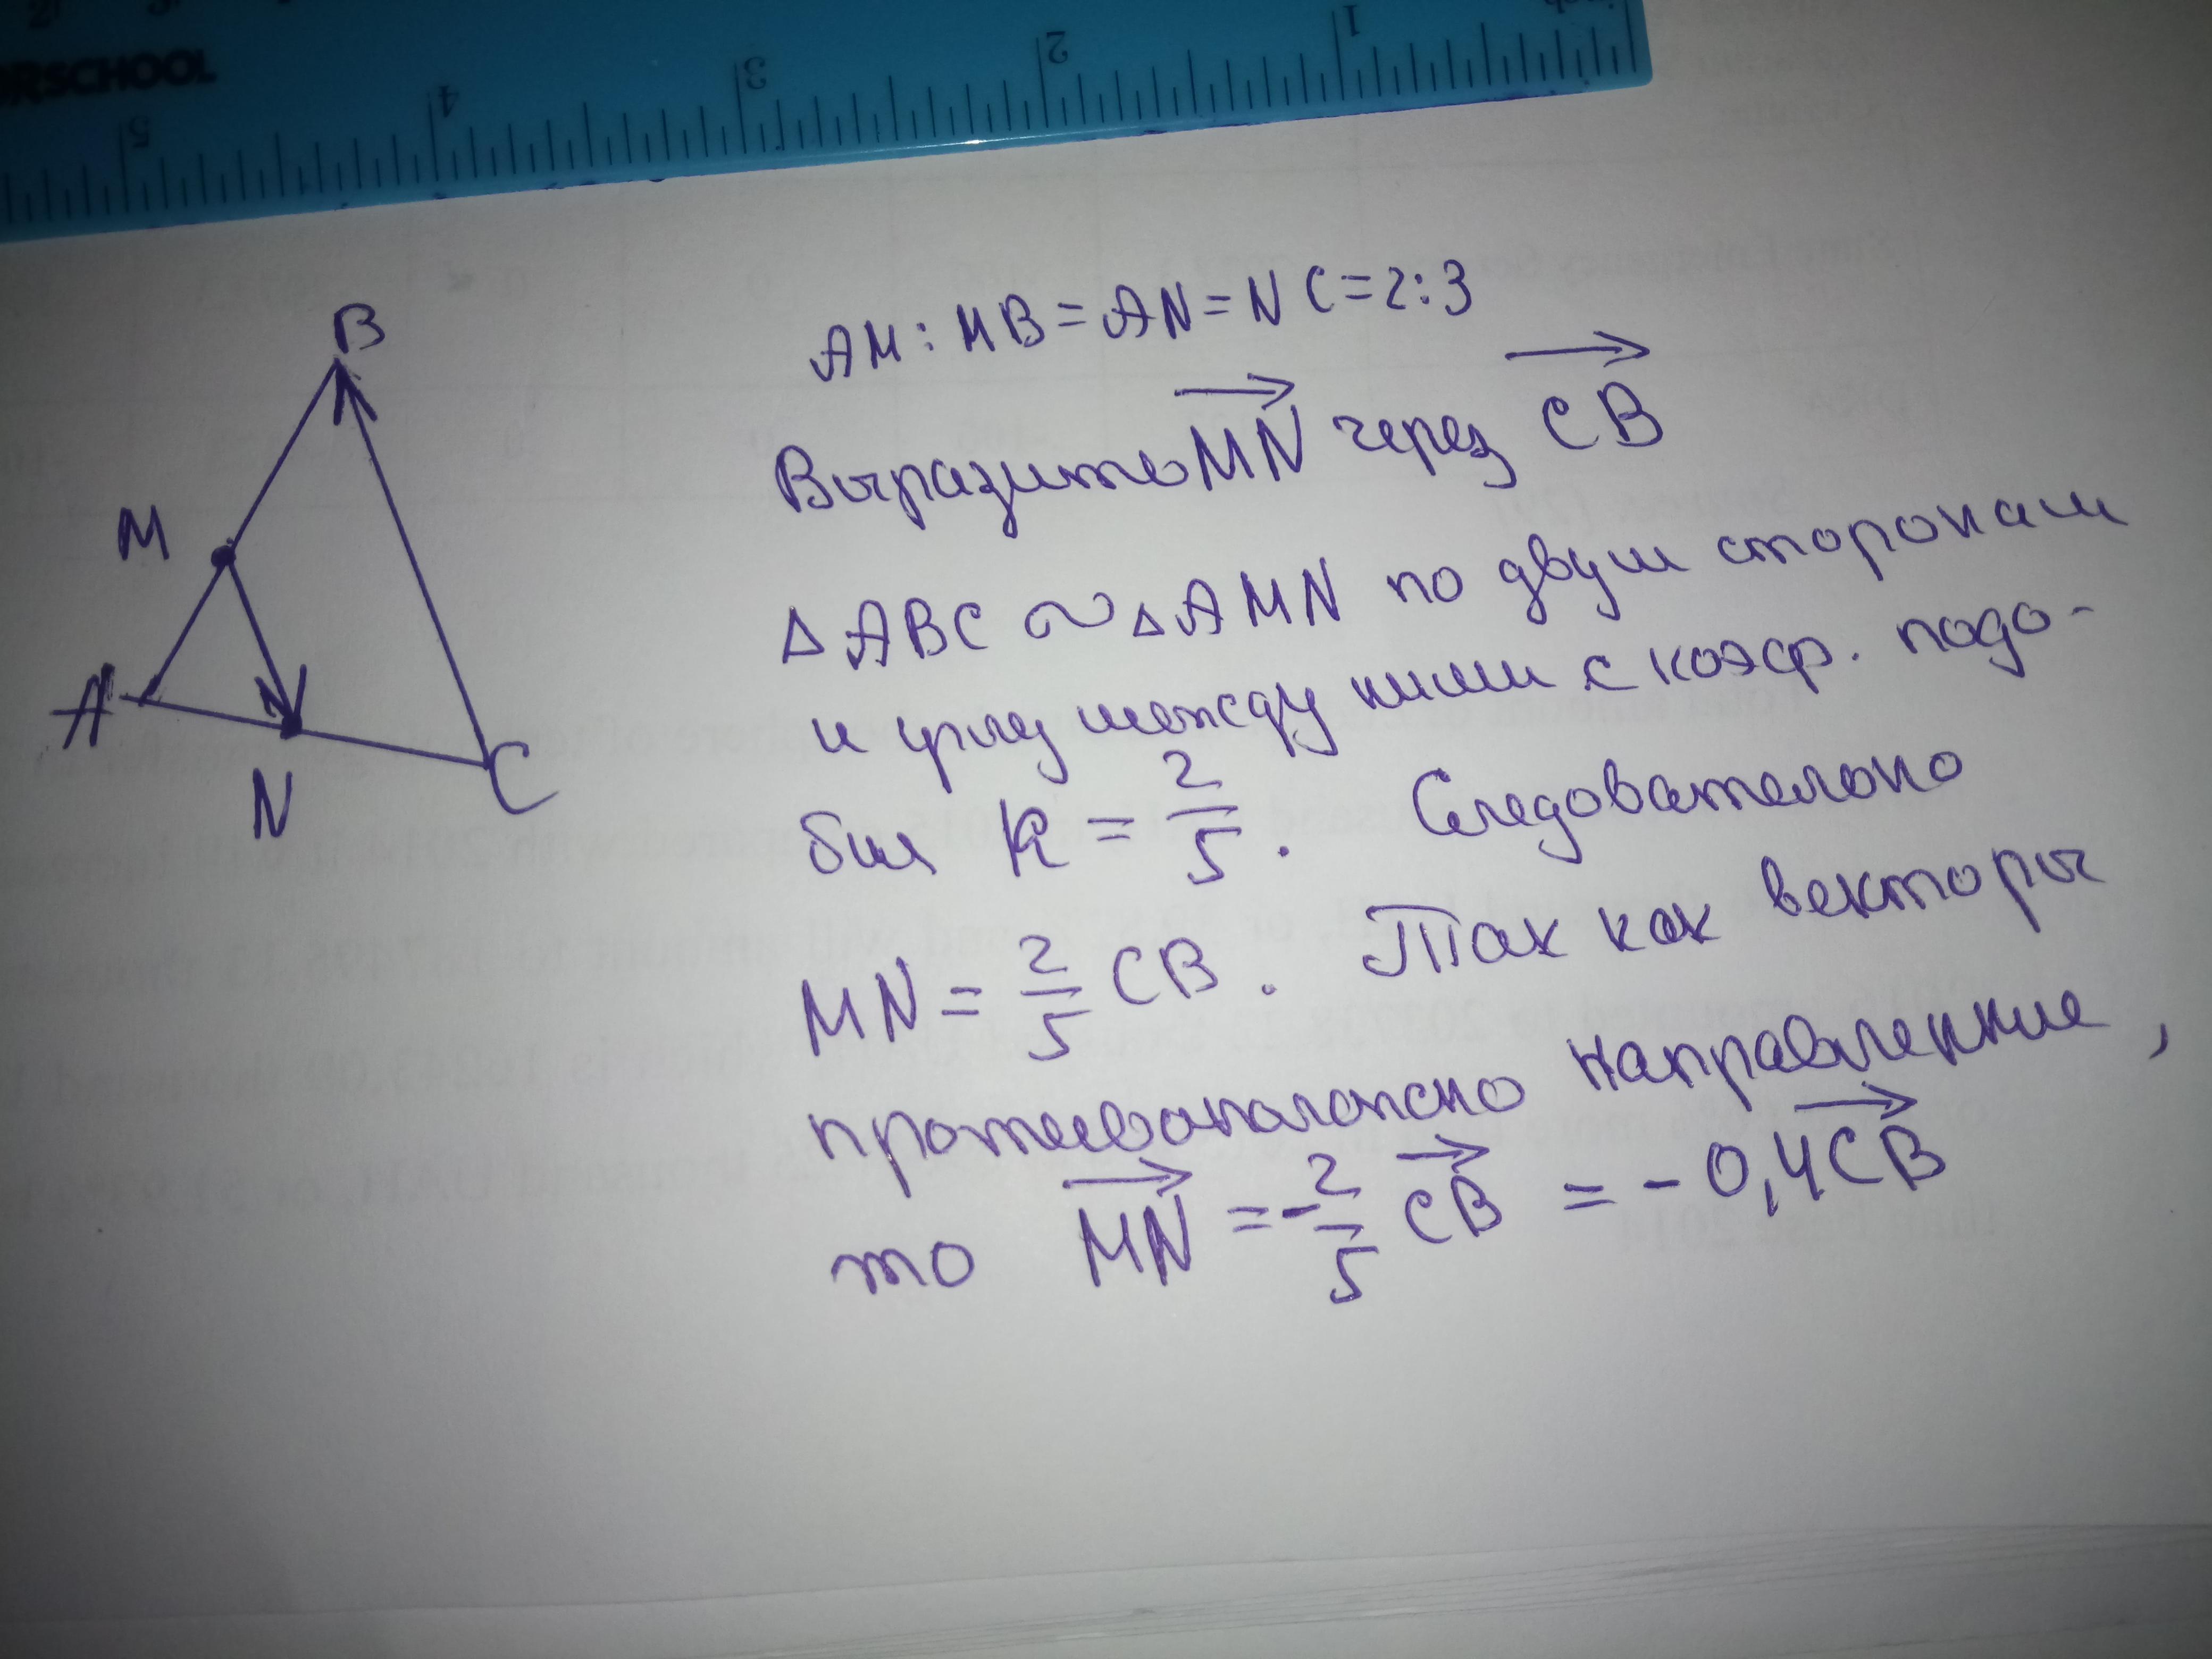 В треугольнике абс отмечены середины м. Точки м и н лежат на сторонах АС И АС треугольника АВС причем ам: МВ. M И N середина сторон AC И CB. Точки m и n лежат на стороне AC треугольника. Точки м и р лежат соответственно на сторонах вс и АВ треугольника АВС.